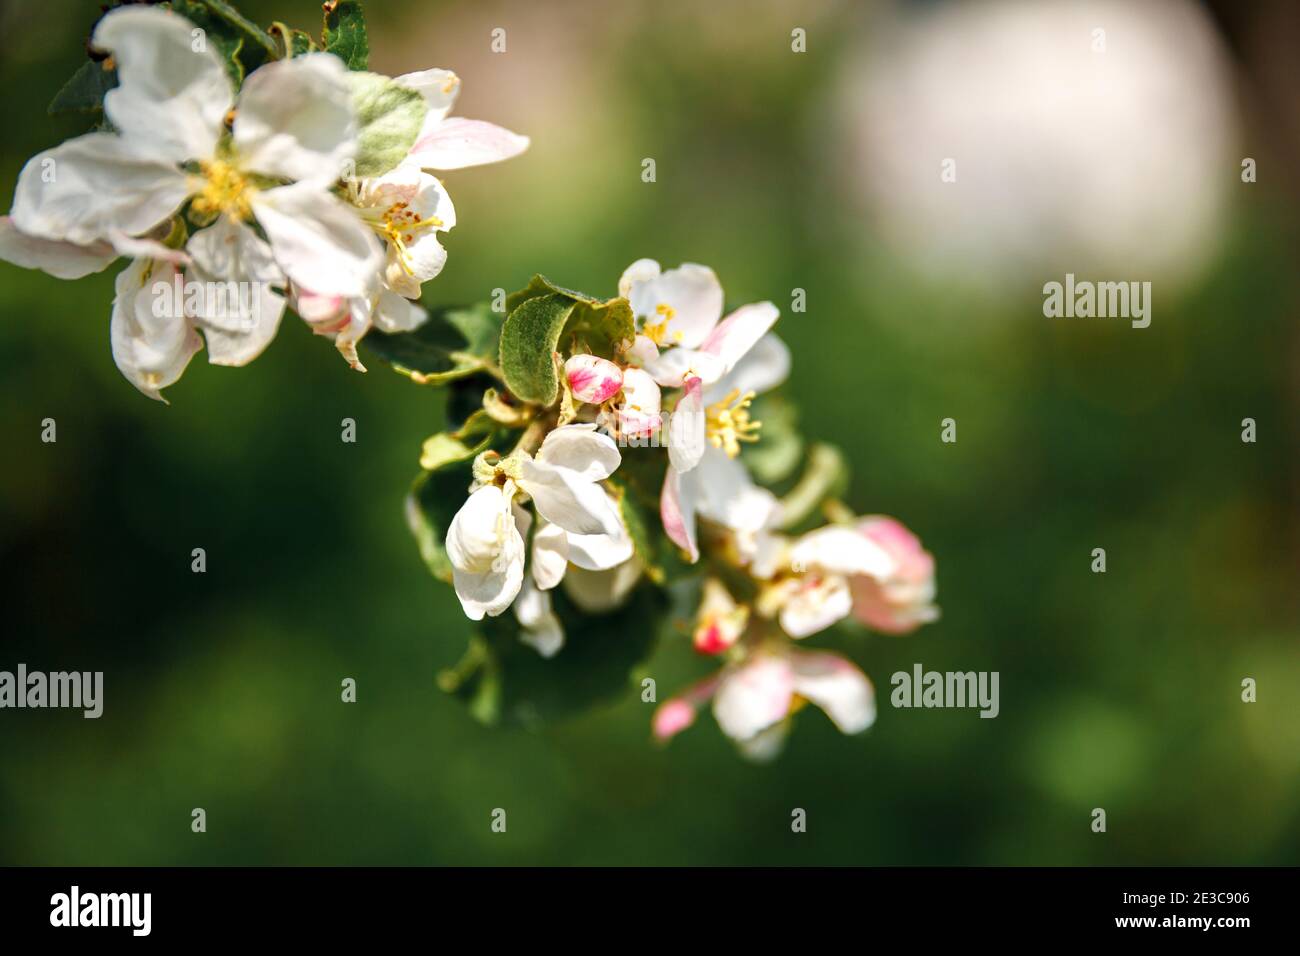 Schöne weiße Apple blühen Blumen im Frühling. Hintergrund mit blühenden Apfelbaum. Inspirierende Natur Blumen Frühling blühenden Garten oder Par Stockfoto